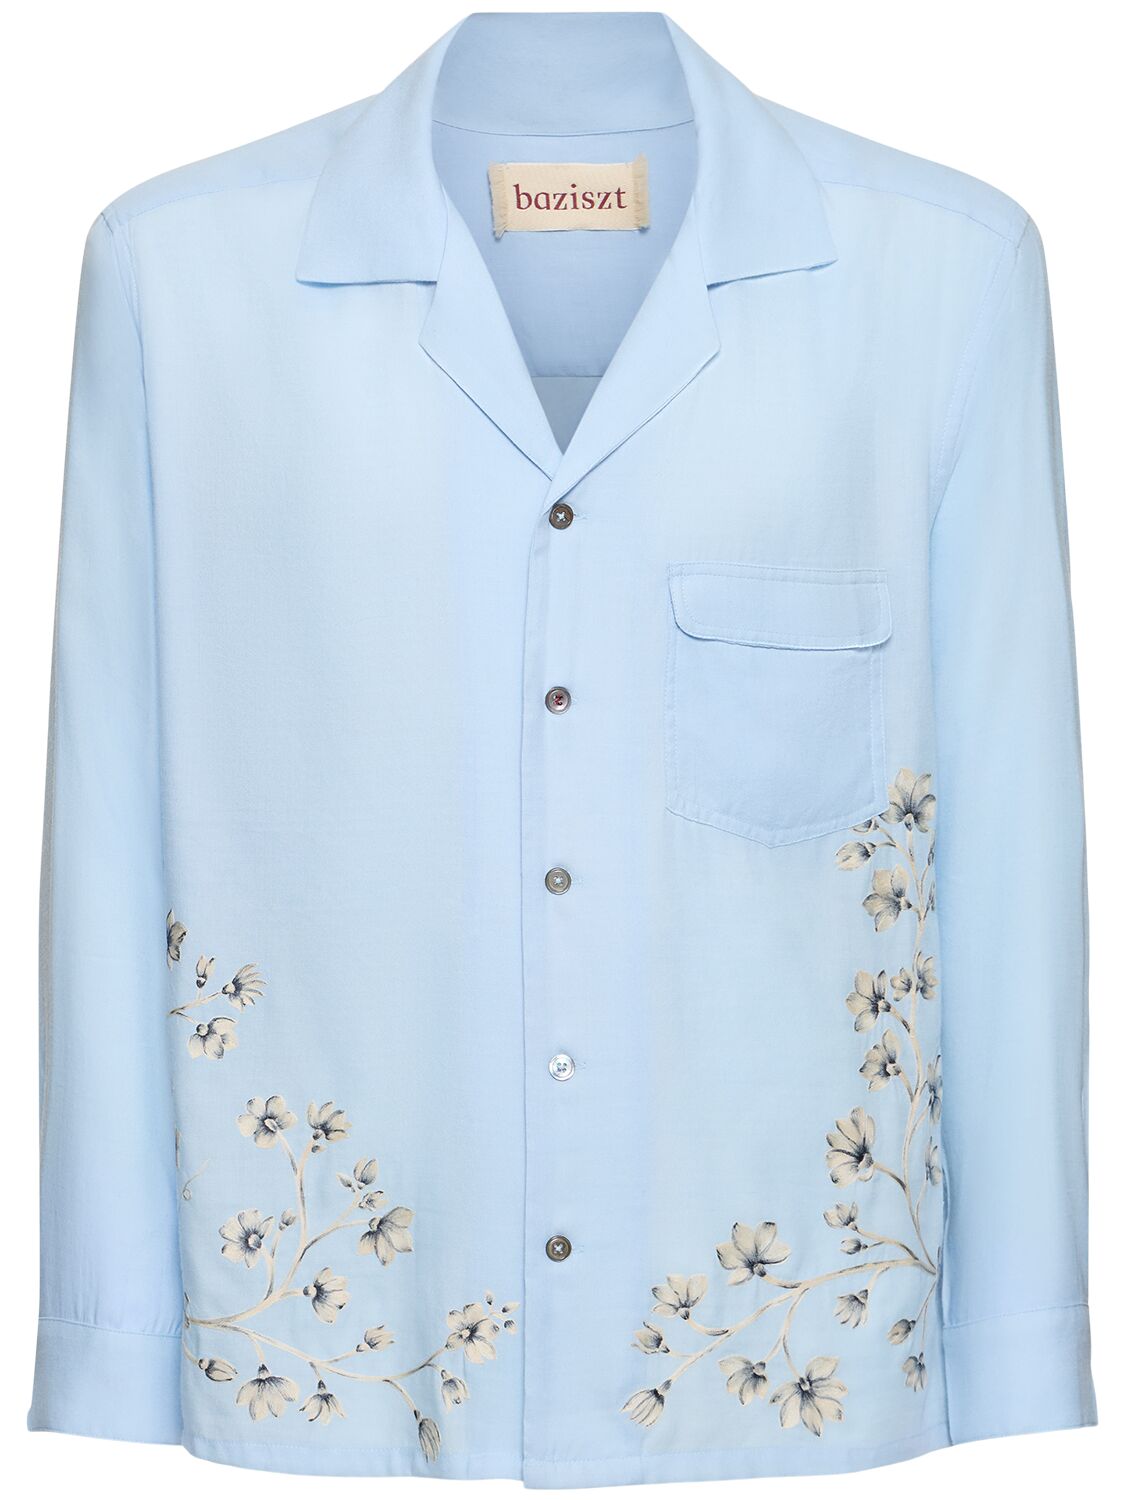 Baziszt Flower Cotton & Rayon Shirt In Light Blue